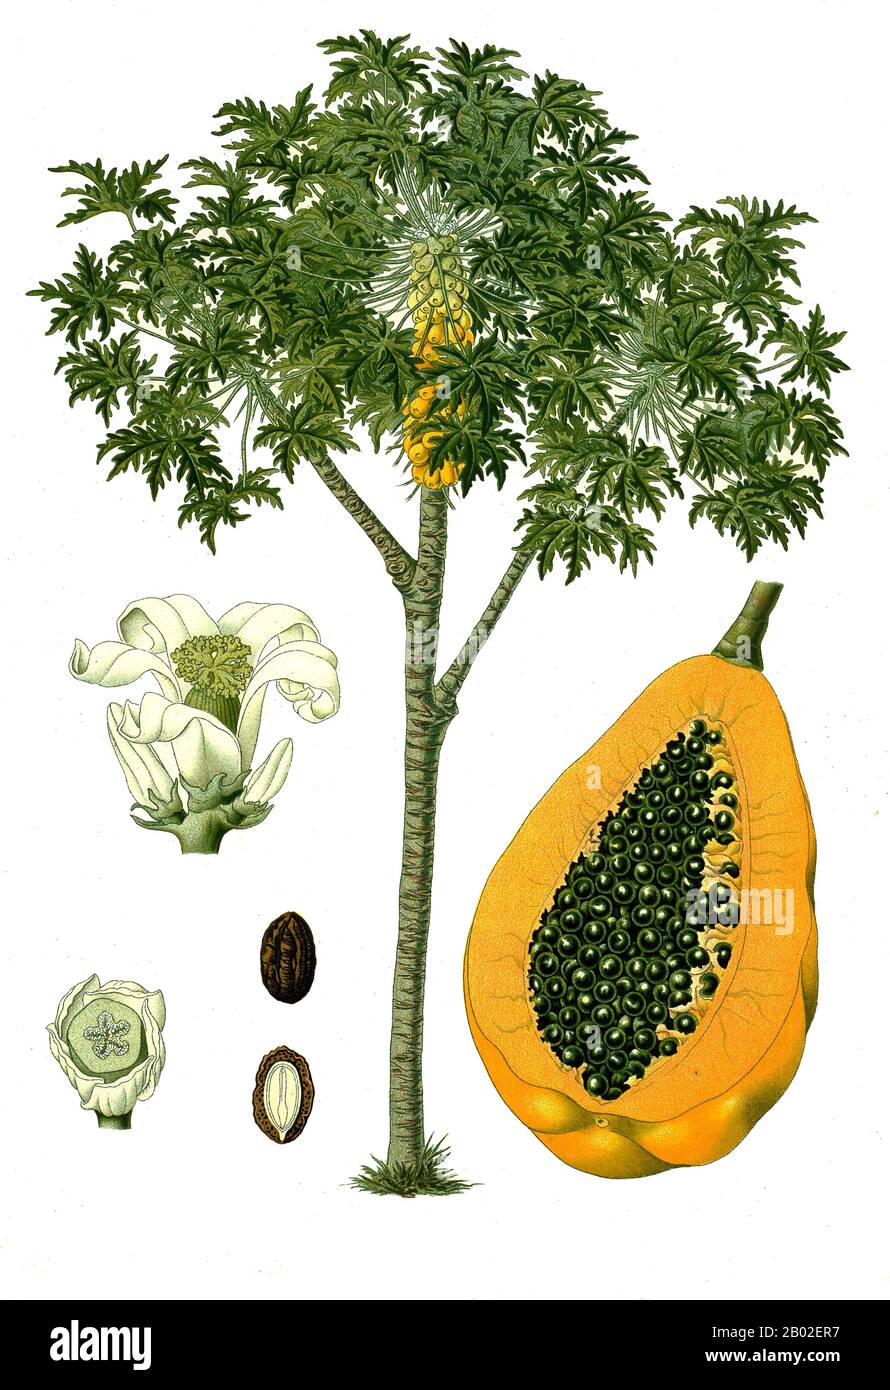 Die Papaya (von Carib über Spanisch), Papaw oder Pawpaw ist die Frucht der Pflanze Carica papaya, der einzigen Art in der Gattung Carica der Pflanzenfamilie Caricaceae. Sie ist in den Tropen Amerikas heimisch, vielleicht aus dem Süden Mexikos und dem benachbarten Mittelamerika. Es wurde zuerst einige Jahrhunderte vor der Entstehung der mesoamerikanischen klassischen Zivilisationen in Mexiko kultiviert. Die Papaya ist eine große, baumartige Pflanze, mit einem einzigen Stamm, der von 5 bis 10 m (16 bis 33 ft) groß wird, mit spiralig angeordneten Blättern, die auf die Oberseite des Stammes beschränkt sind. Der untere Stamm ist auffällig scharrt WH Stockfoto